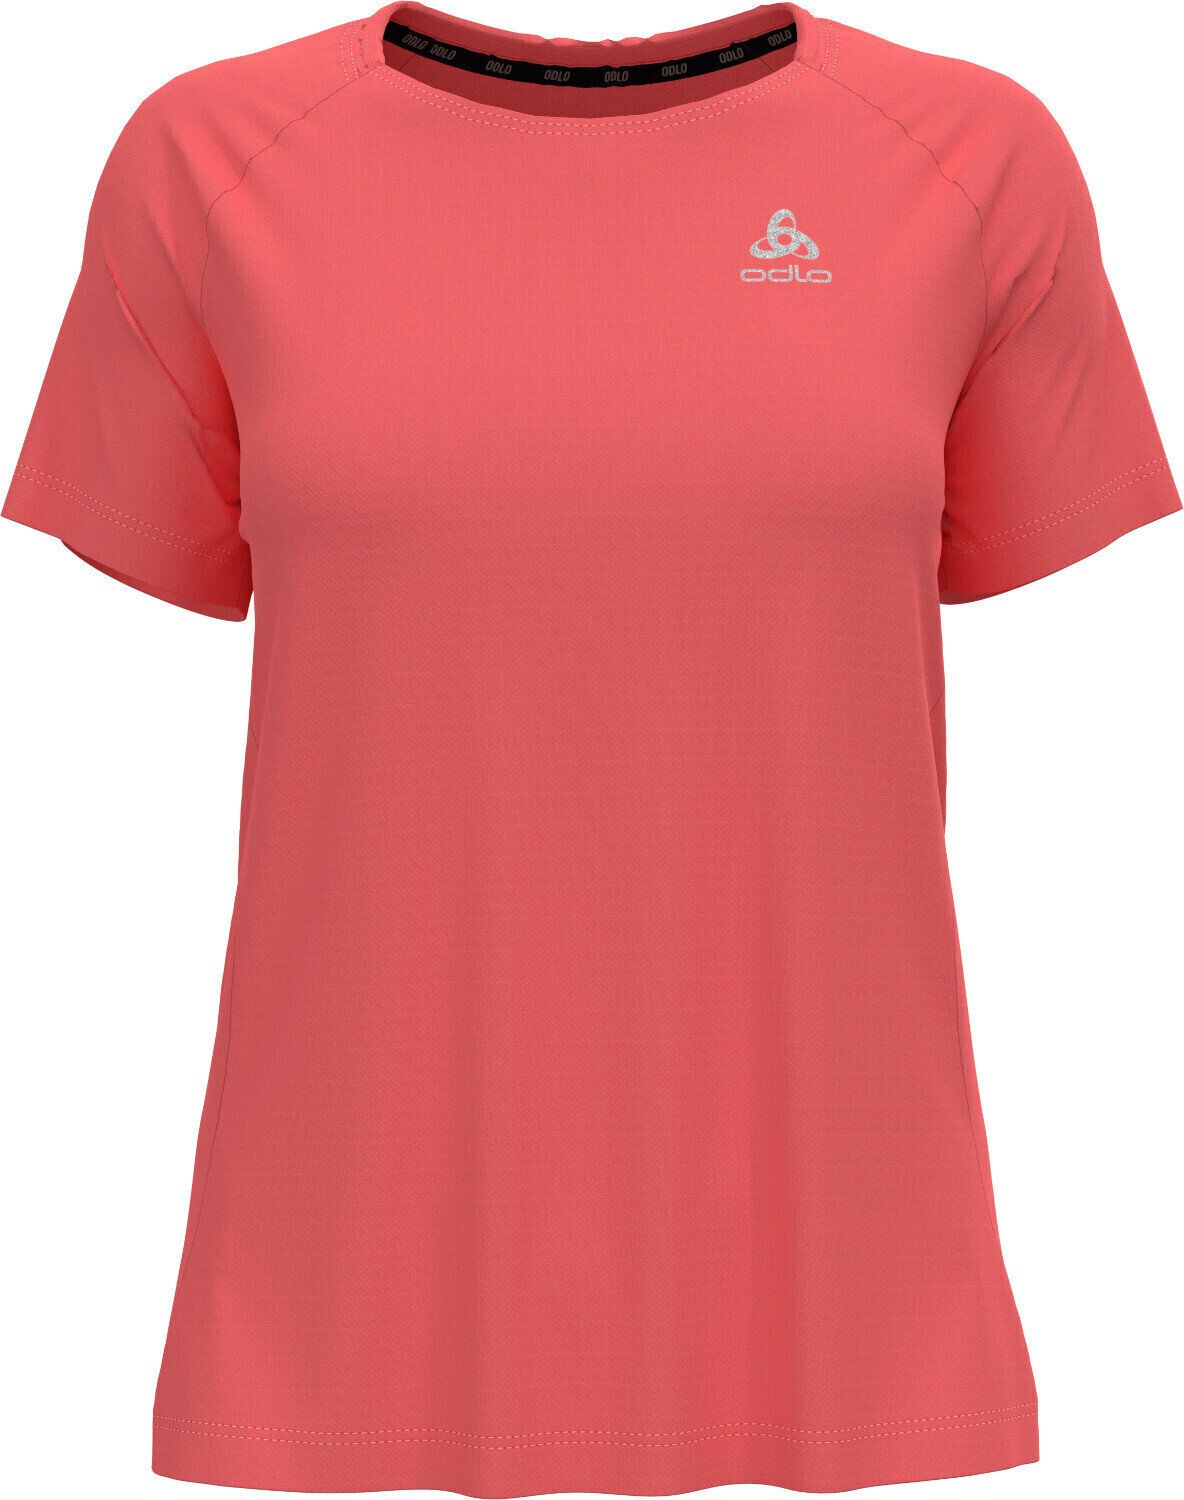 Koszulka do biegania z krótkim rękawem
 Odlo Essential T-Shirt Siesta XS Koszulka do biegania z krótkim rękawem